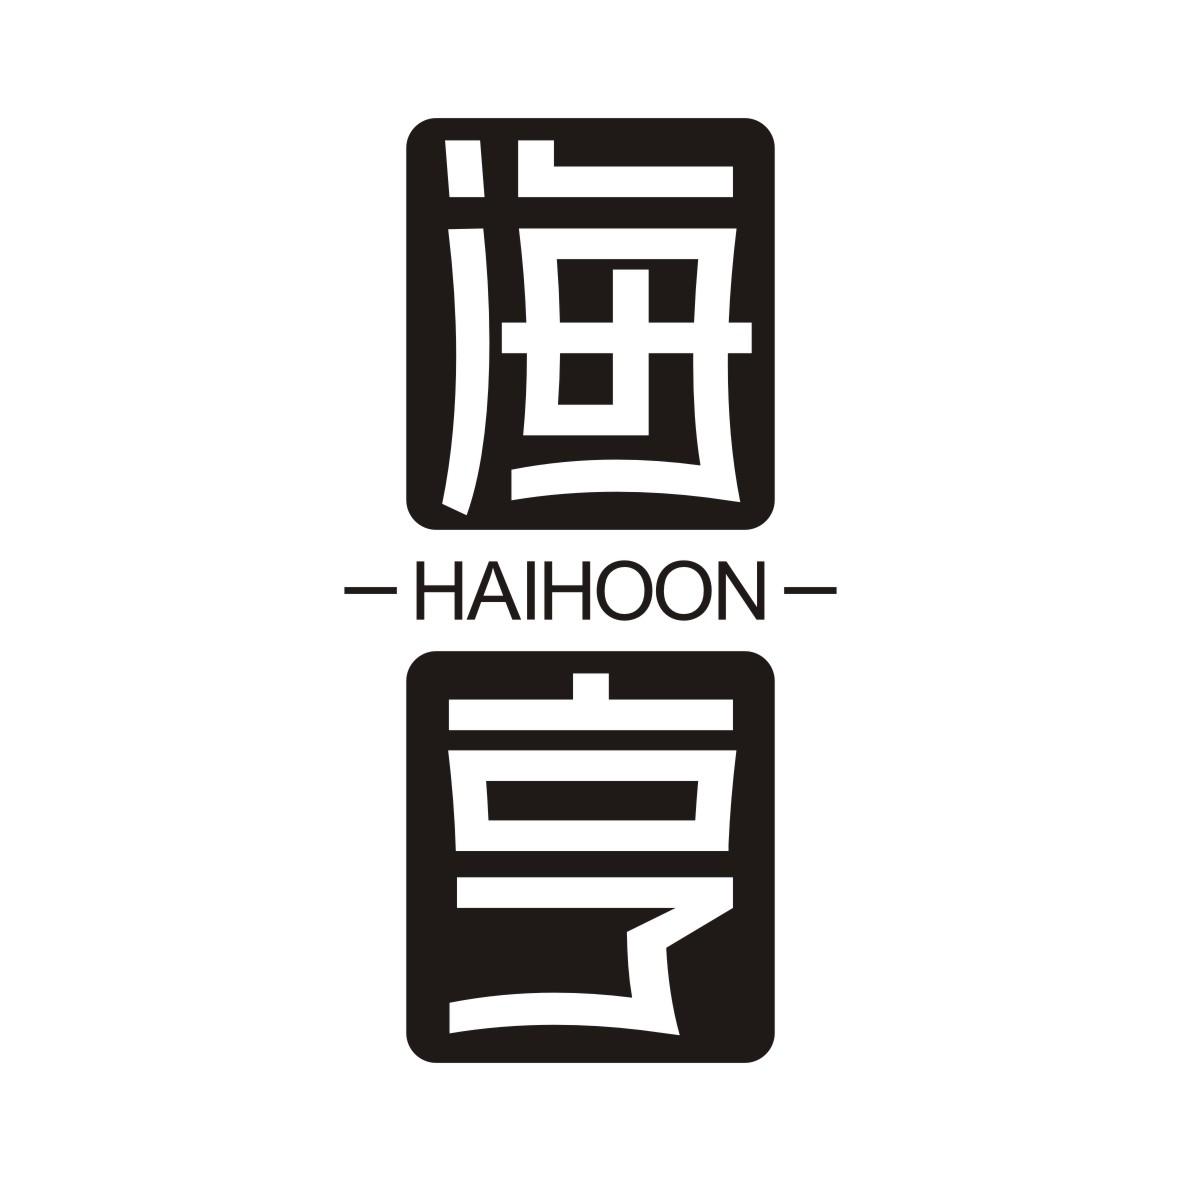  HAIHOON